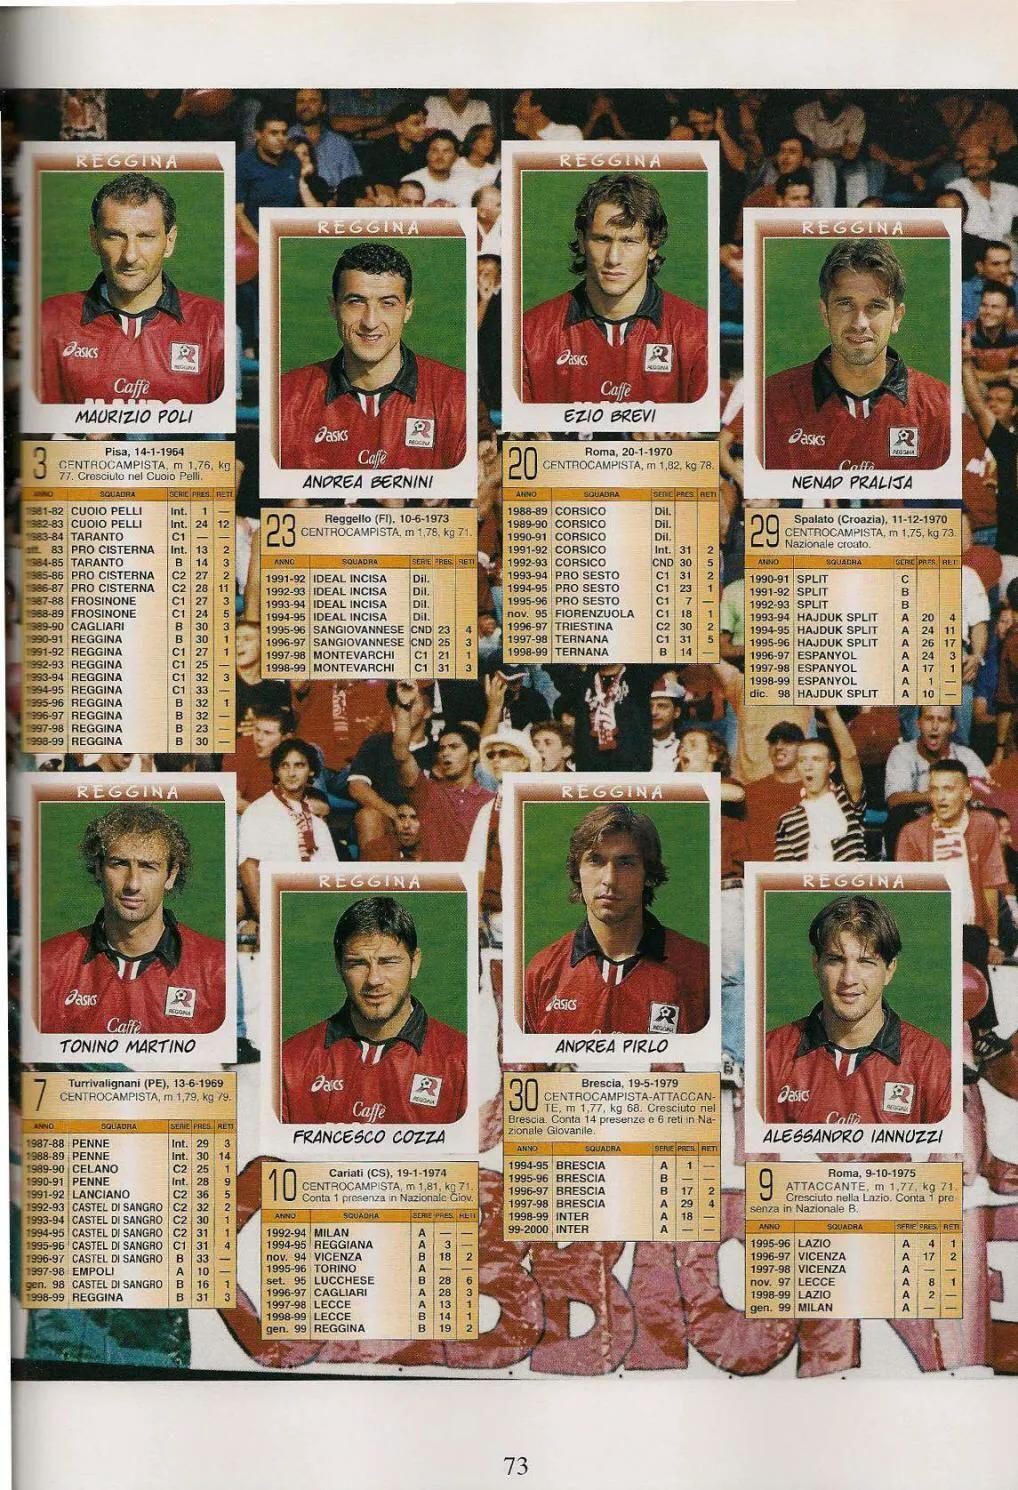 「忆意甲」一本意大利足球画册带你回顾1999/00赛季意甲联赛